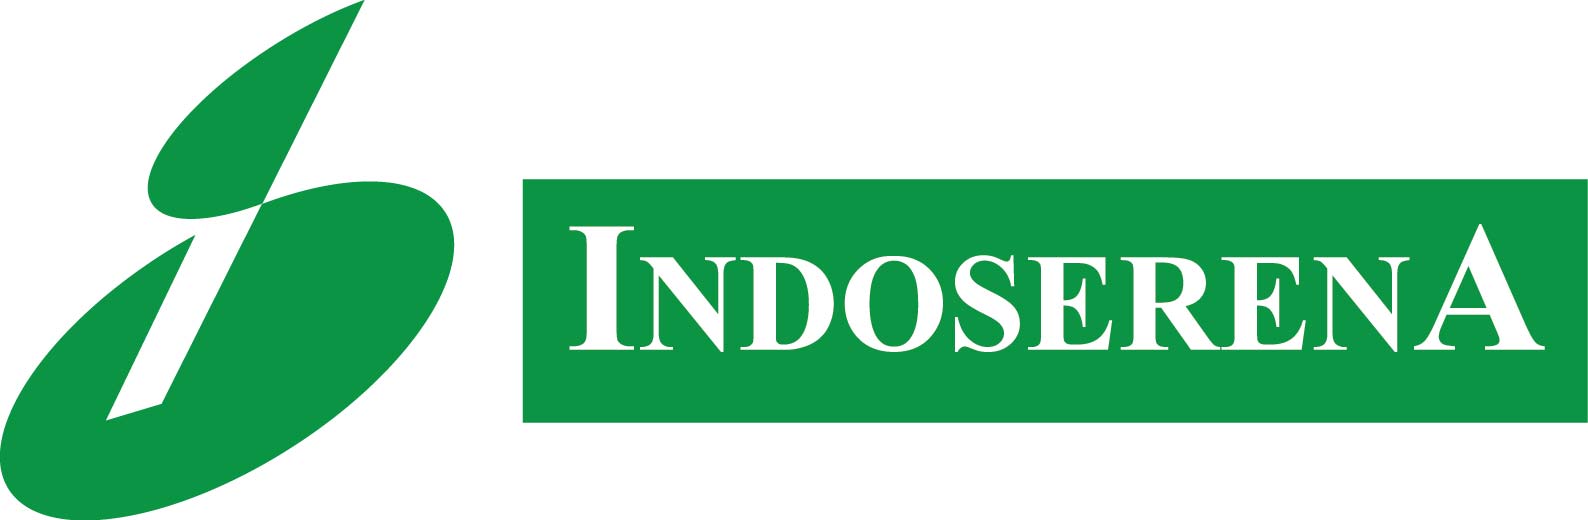 PT Indoserena Logo